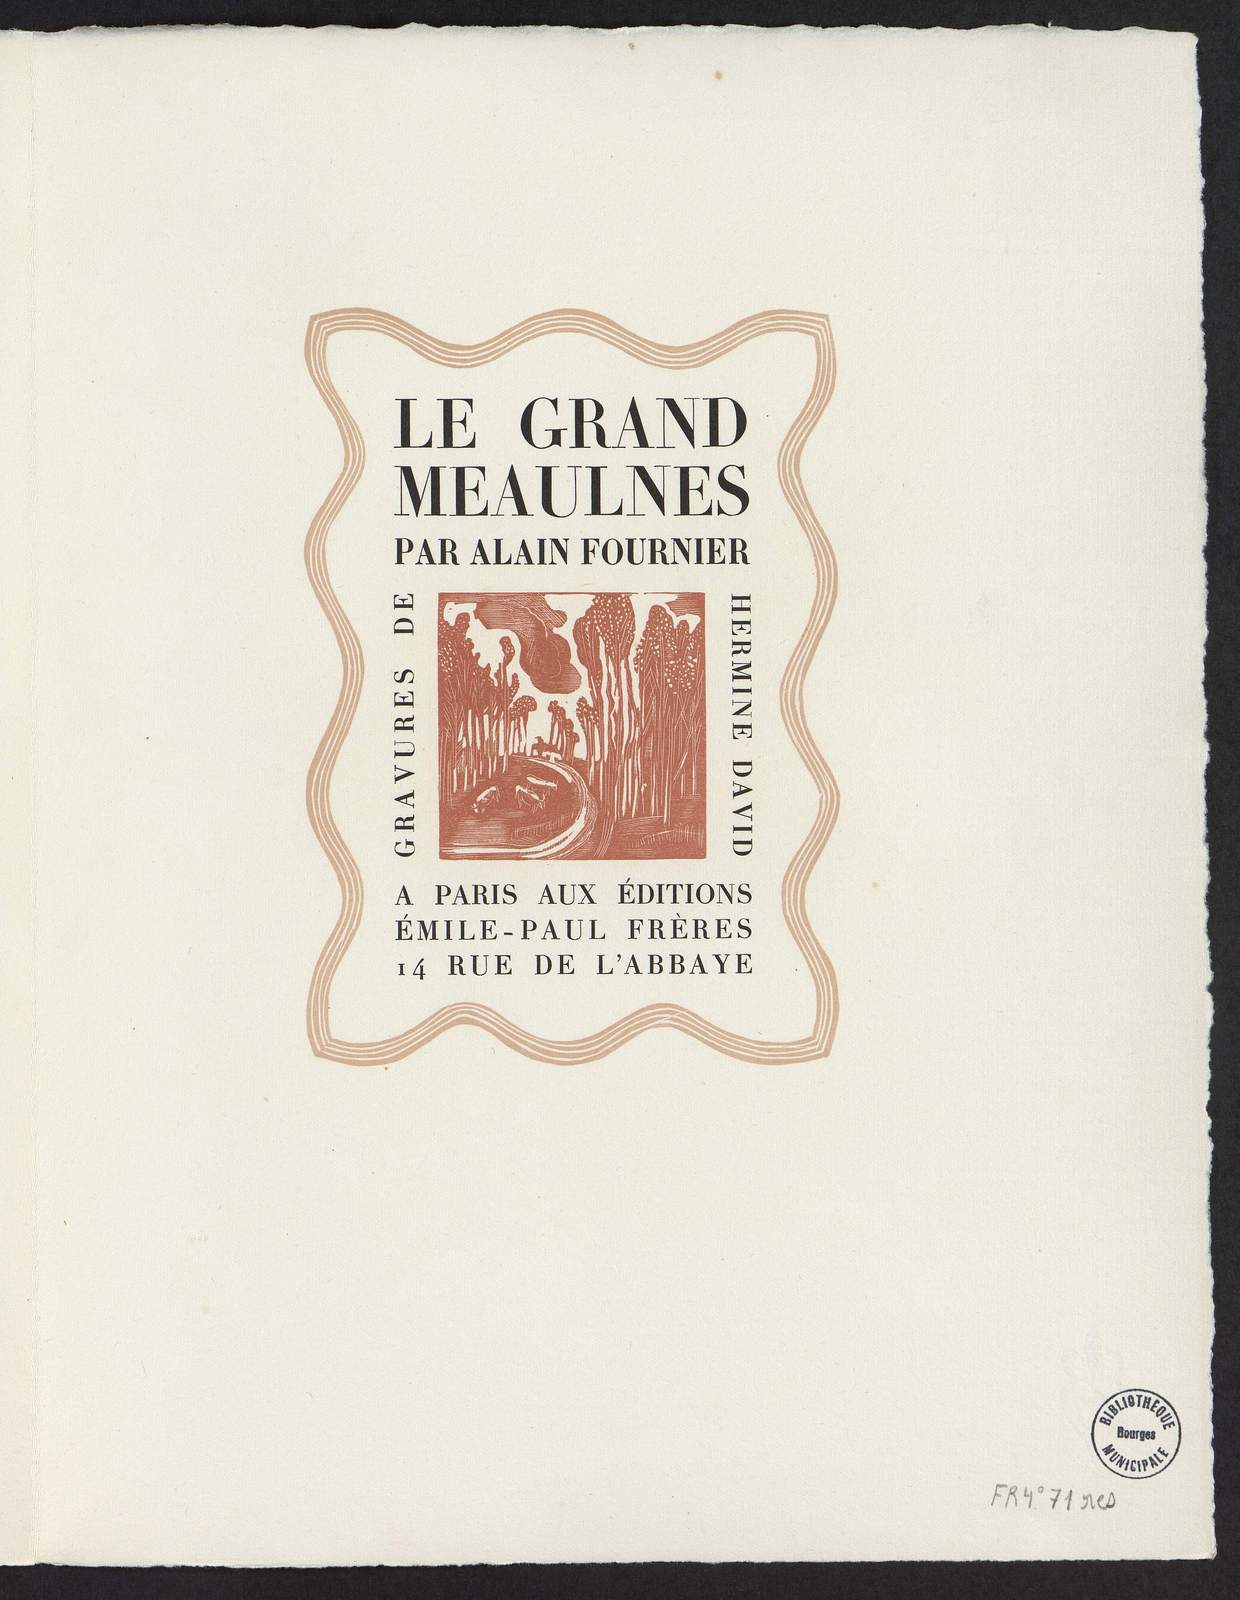 Le Grand Meaulnes, Le bohémien enlève son bandeau, illustré par Hermine David, Emile-Paul Frères, 1930